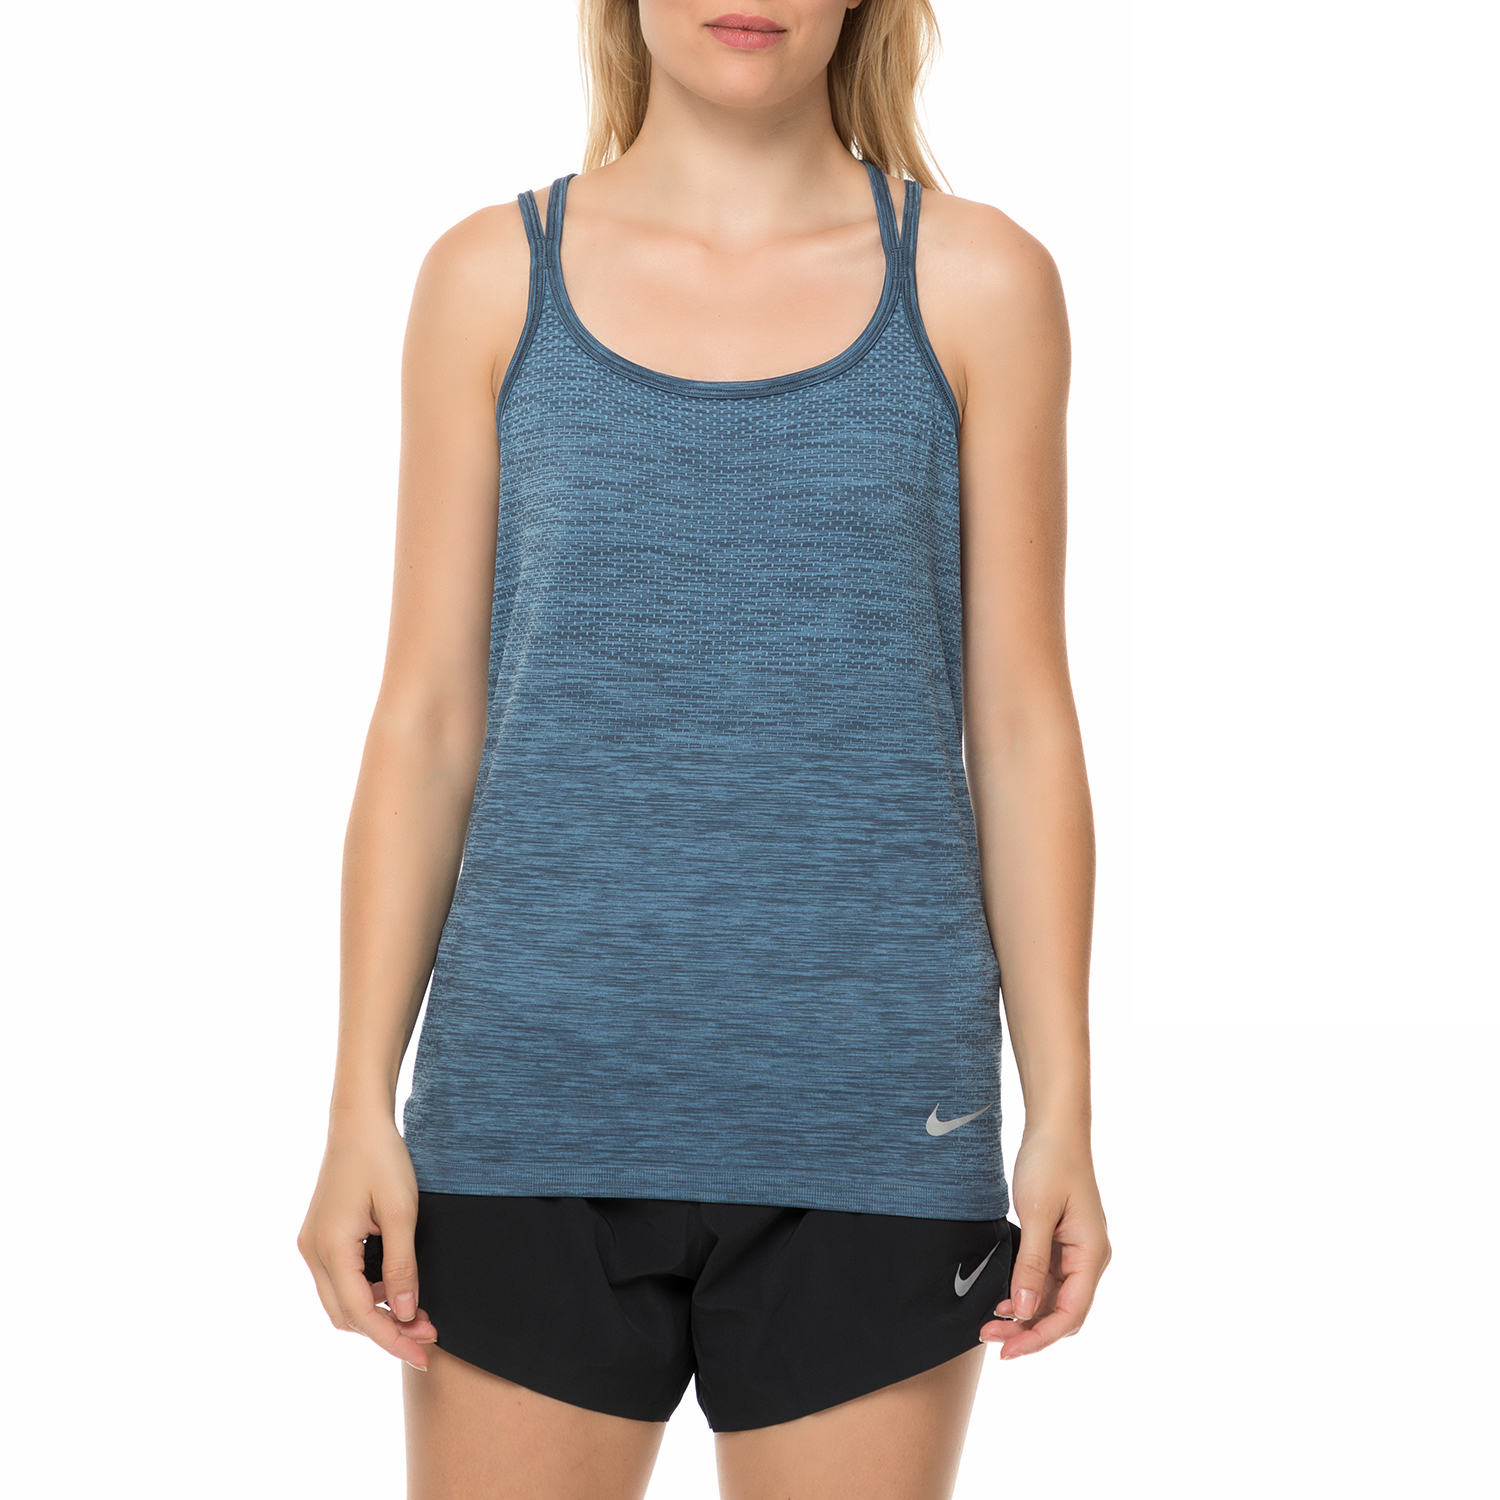 NIKE - Γυναικείο αθλητικό φανελάκι Nike γκρι-μπλε Γυναικεία/Ρούχα/Αθλητικά/T-shirt-Τοπ